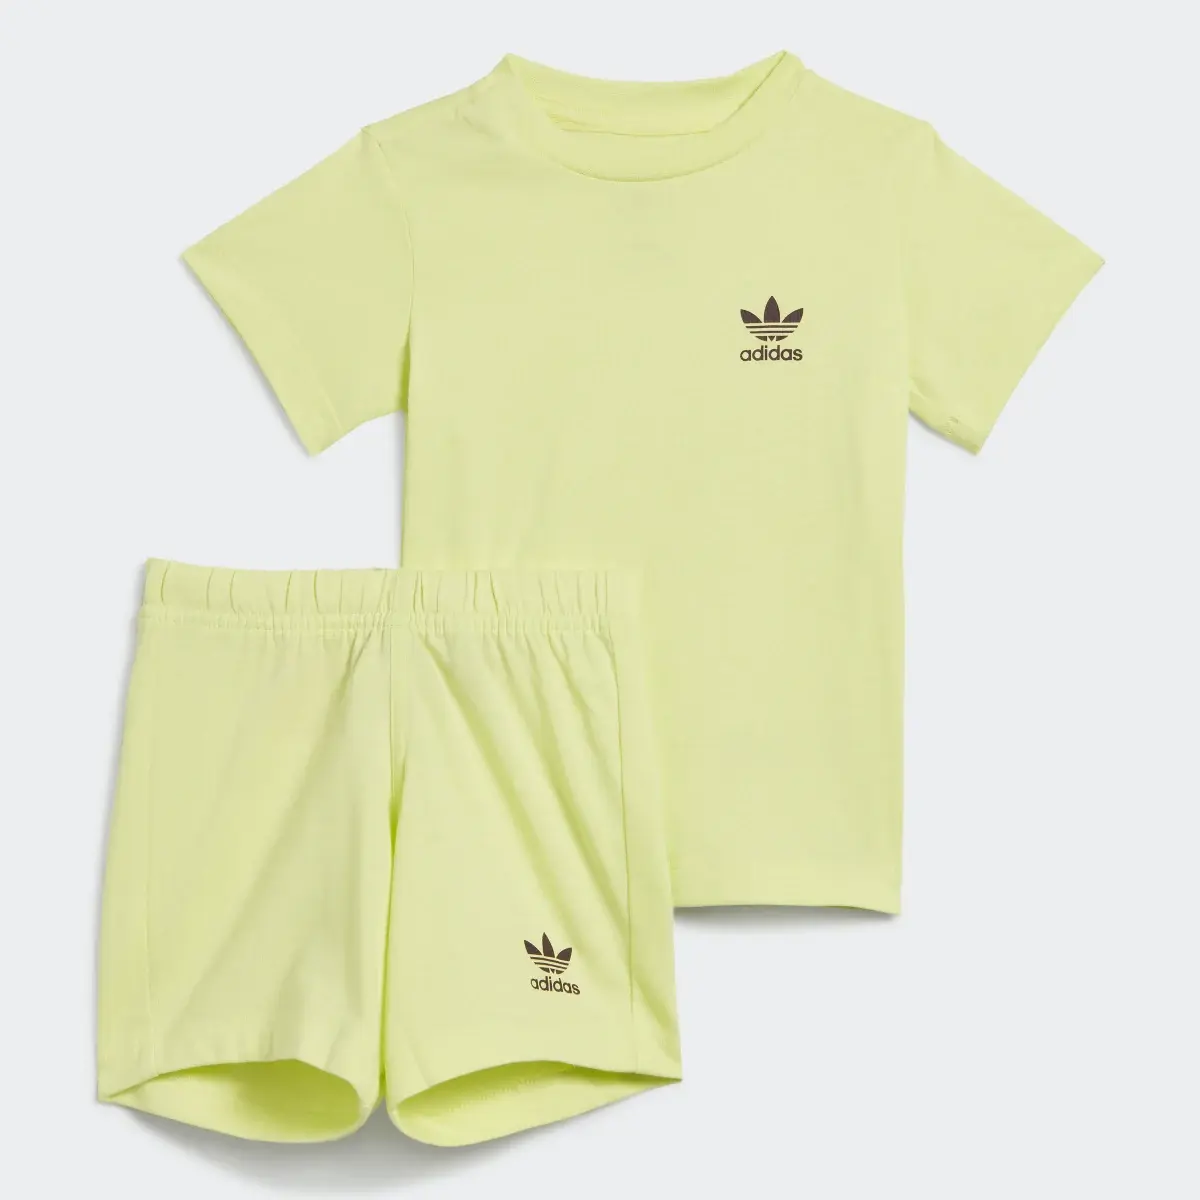 Adidas Shorts and Tee Set. 2